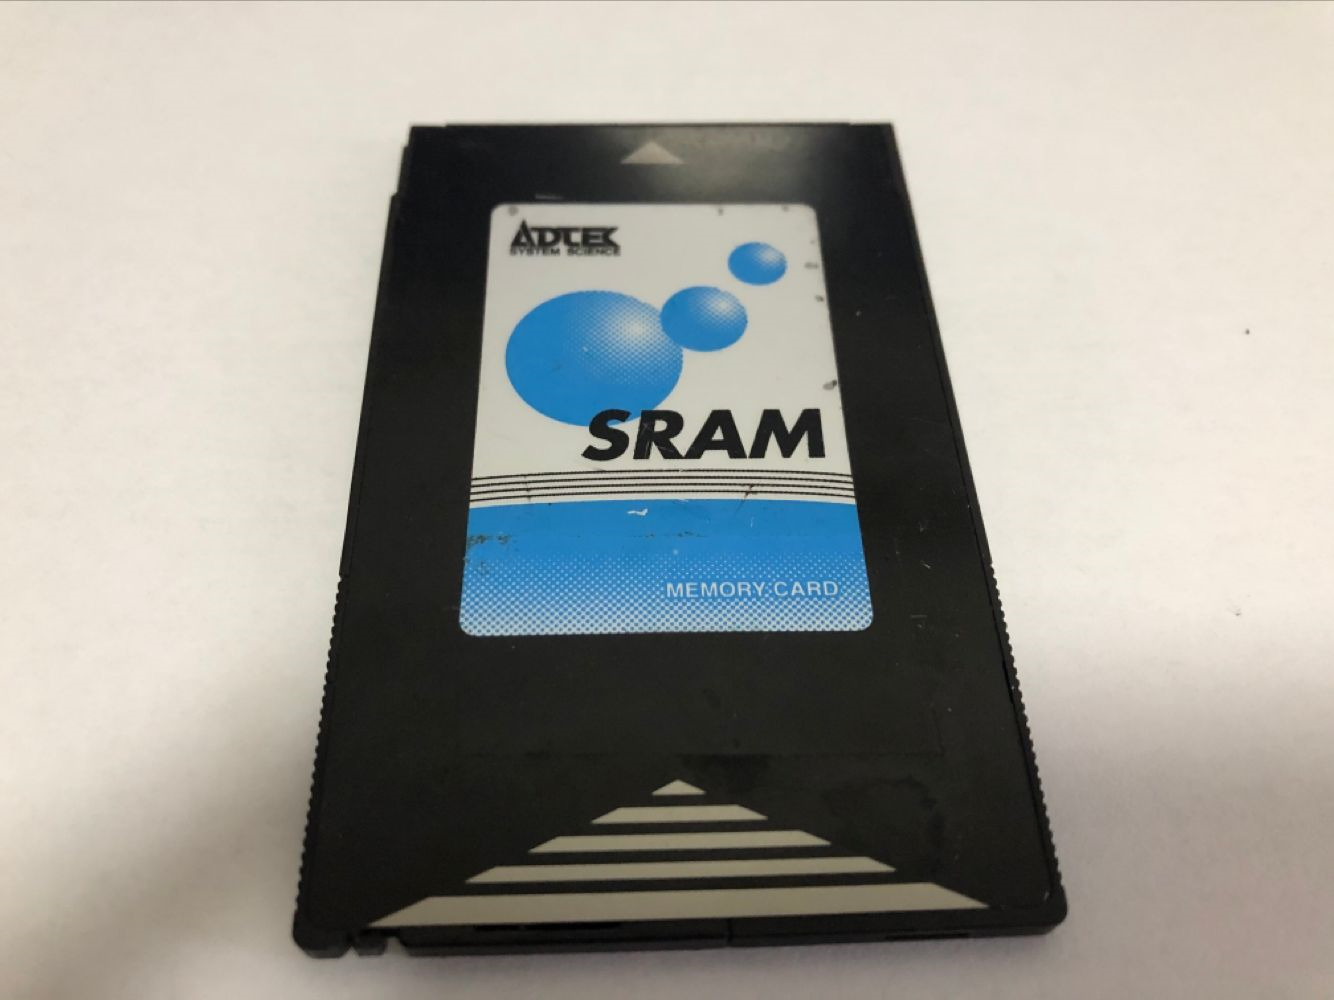 ADTEK 4MB SRAM PCMCIA SRAM Card no battery 